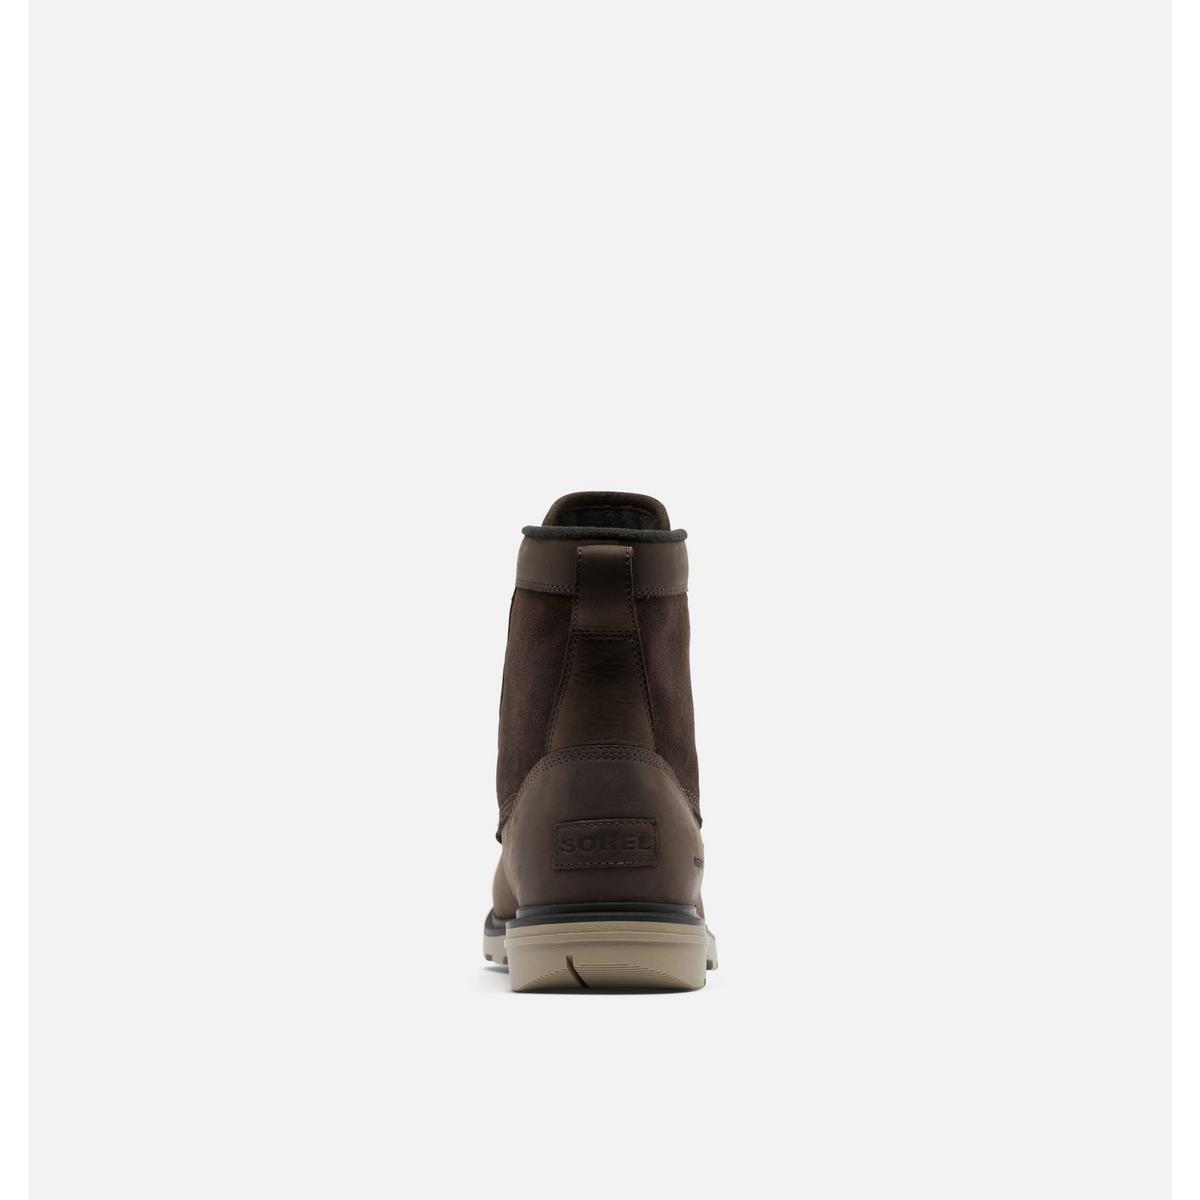 Sorel Men's Carson Storm Waterproof Winter Boots - Dark Brown